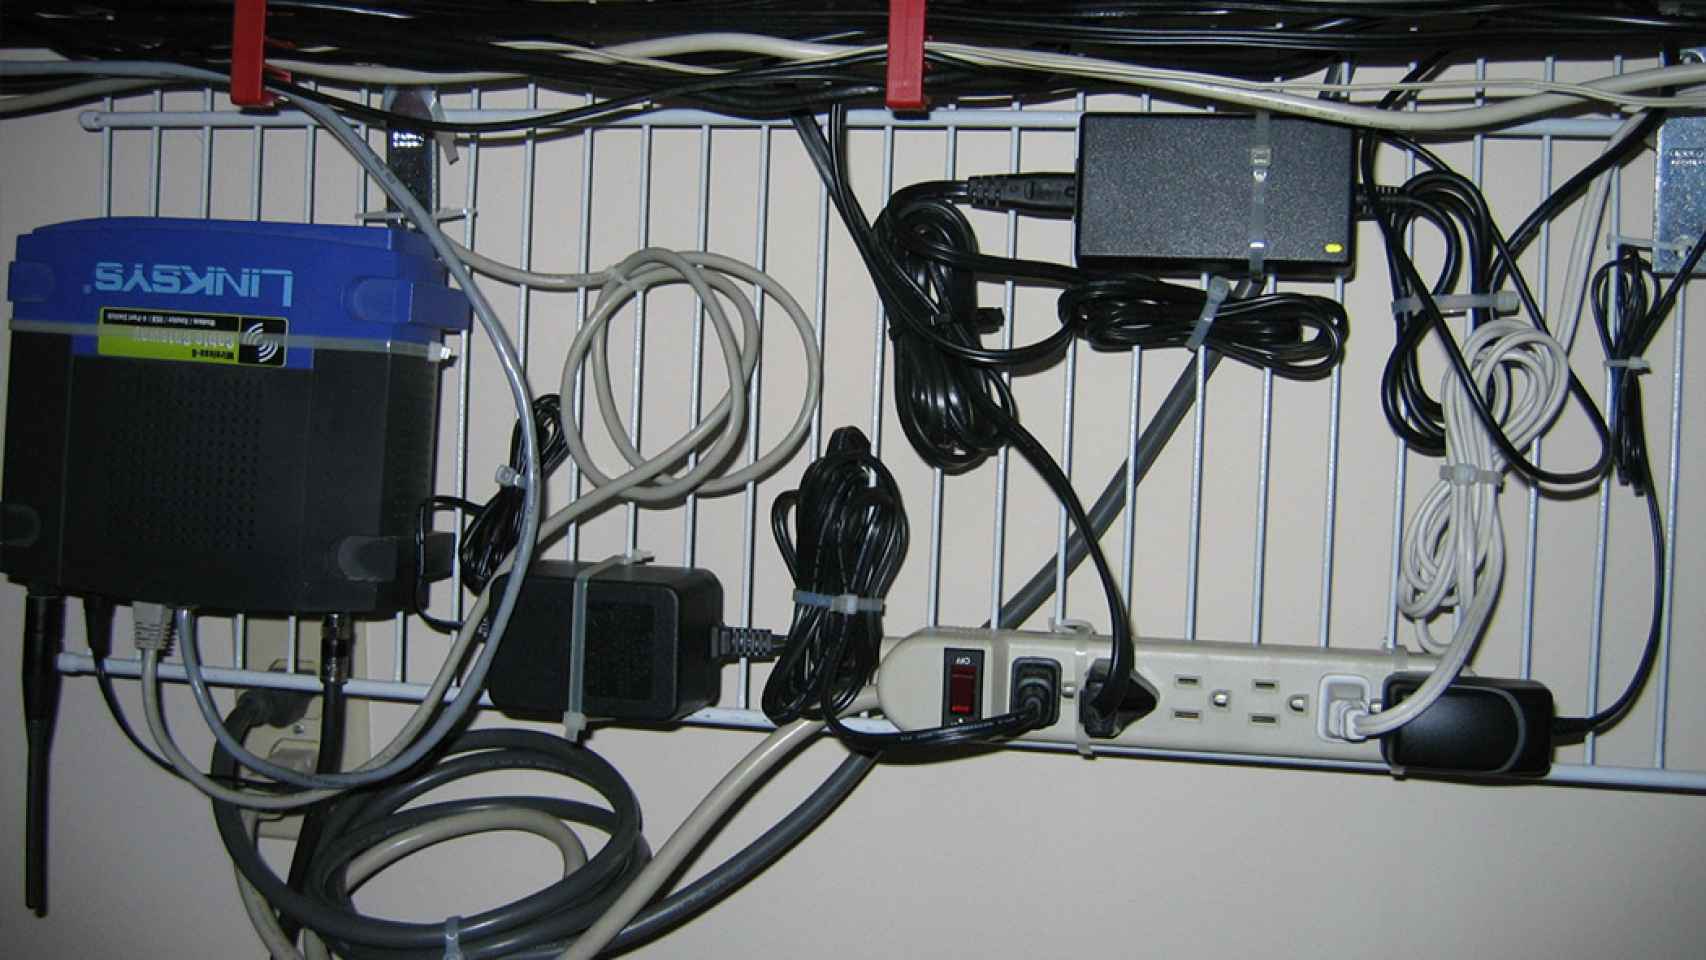 Los mejores accesorios para organizar los cables lo mejor posible